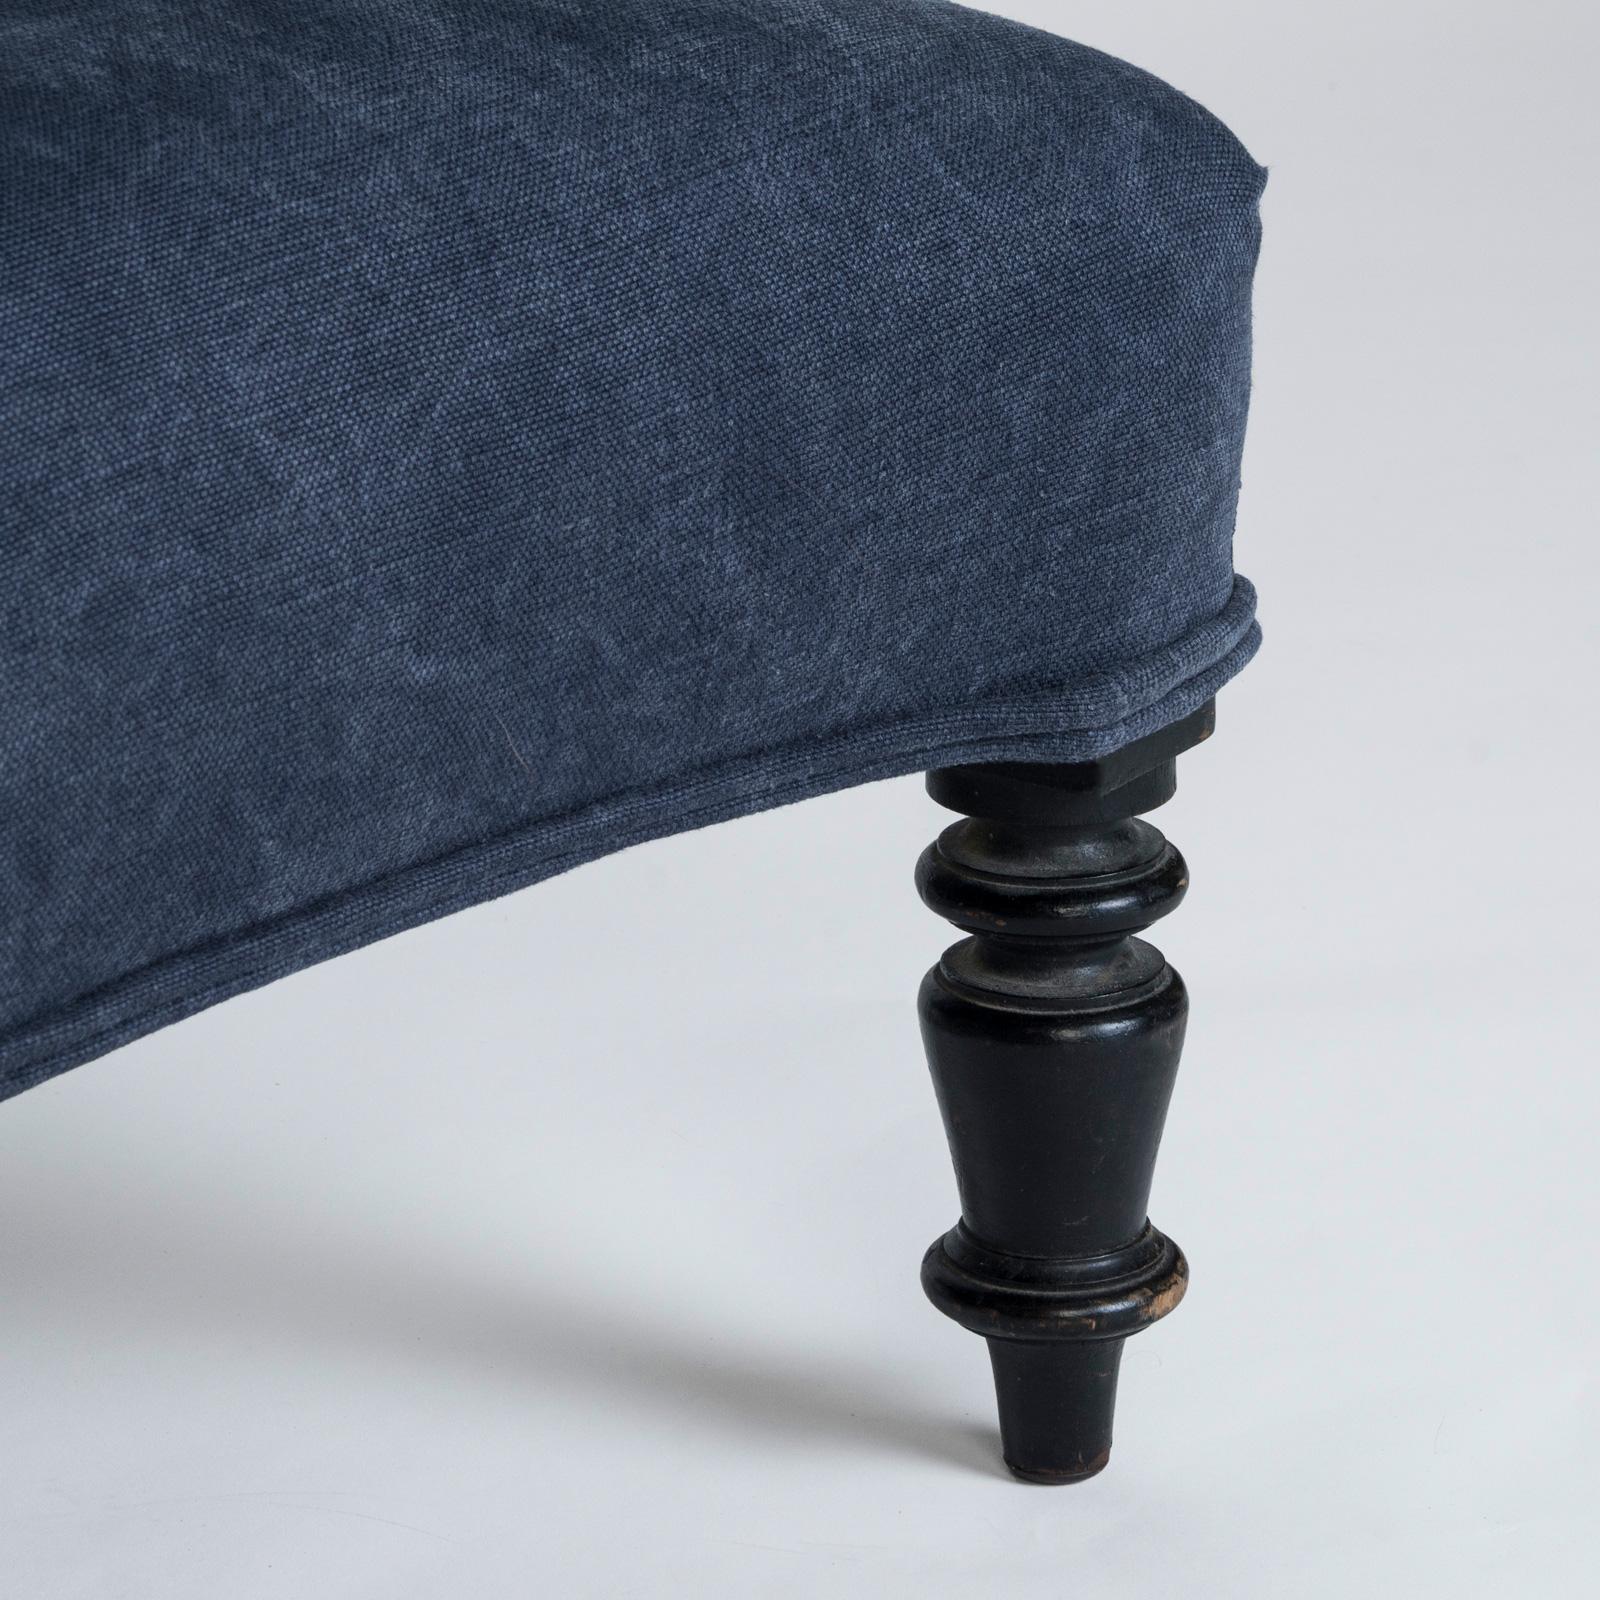 Tabouret ou repose-pieds raffiné du 19e siècle de style Napoléon III, avec une tapisserie en lin bleu caractéristique.

Ce tabouret exquis complète confortablement n'importe quel canapé et sert de siège supplémentaire en cas de besoin. La tapisserie